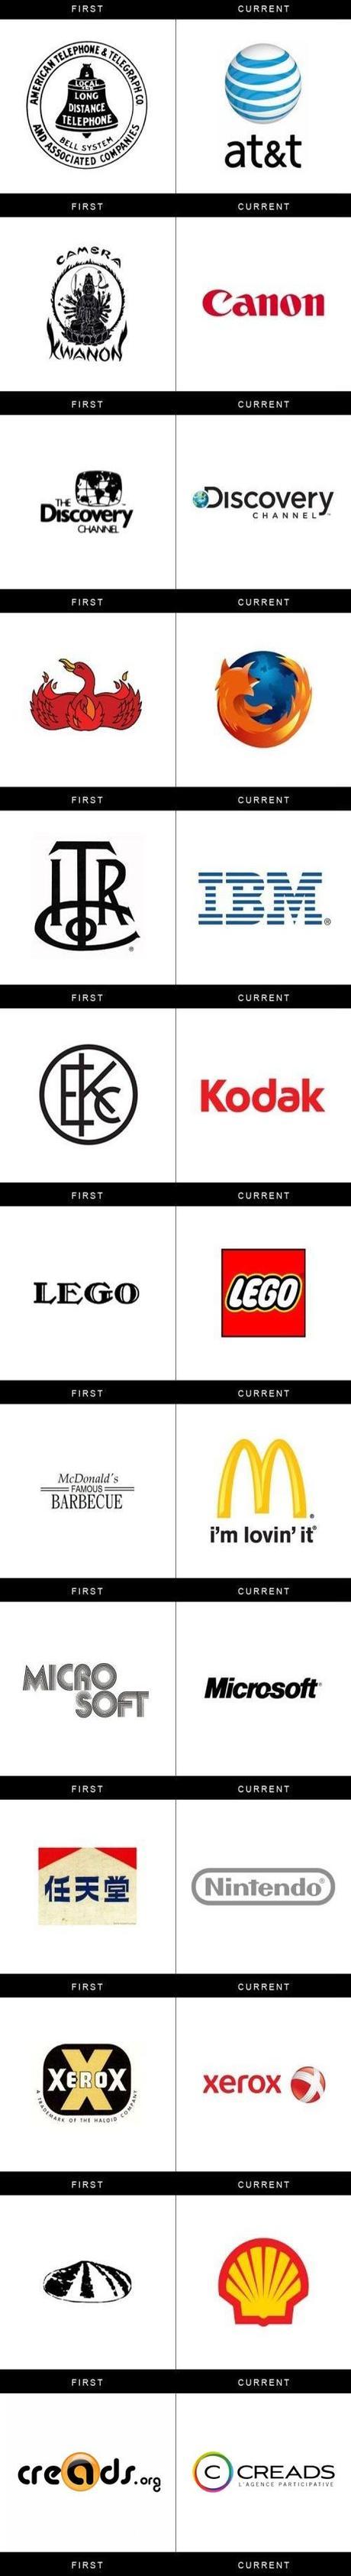 Evolution des logos en 100 ans d’histoire